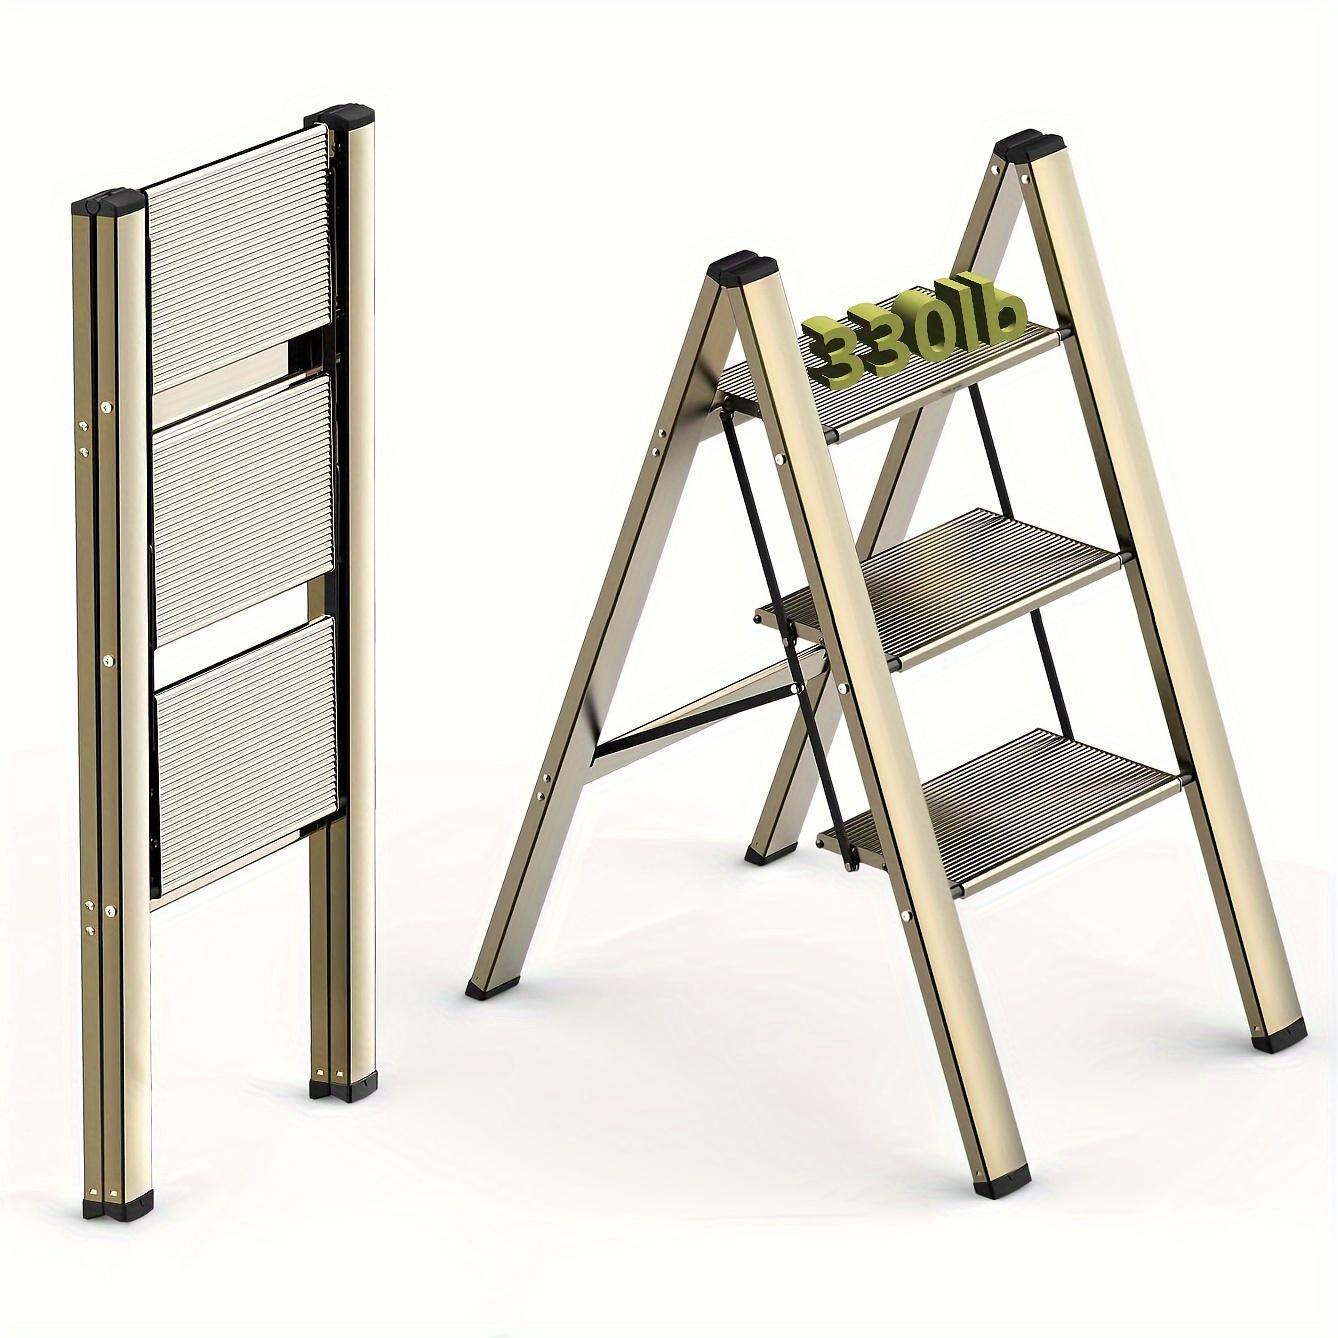 Escaleras de madera de 5 escalones, ligero, plegable, multiusos, escaleras,  estantes, escaleras, silla de escalera, capacidad de 300 libras (3